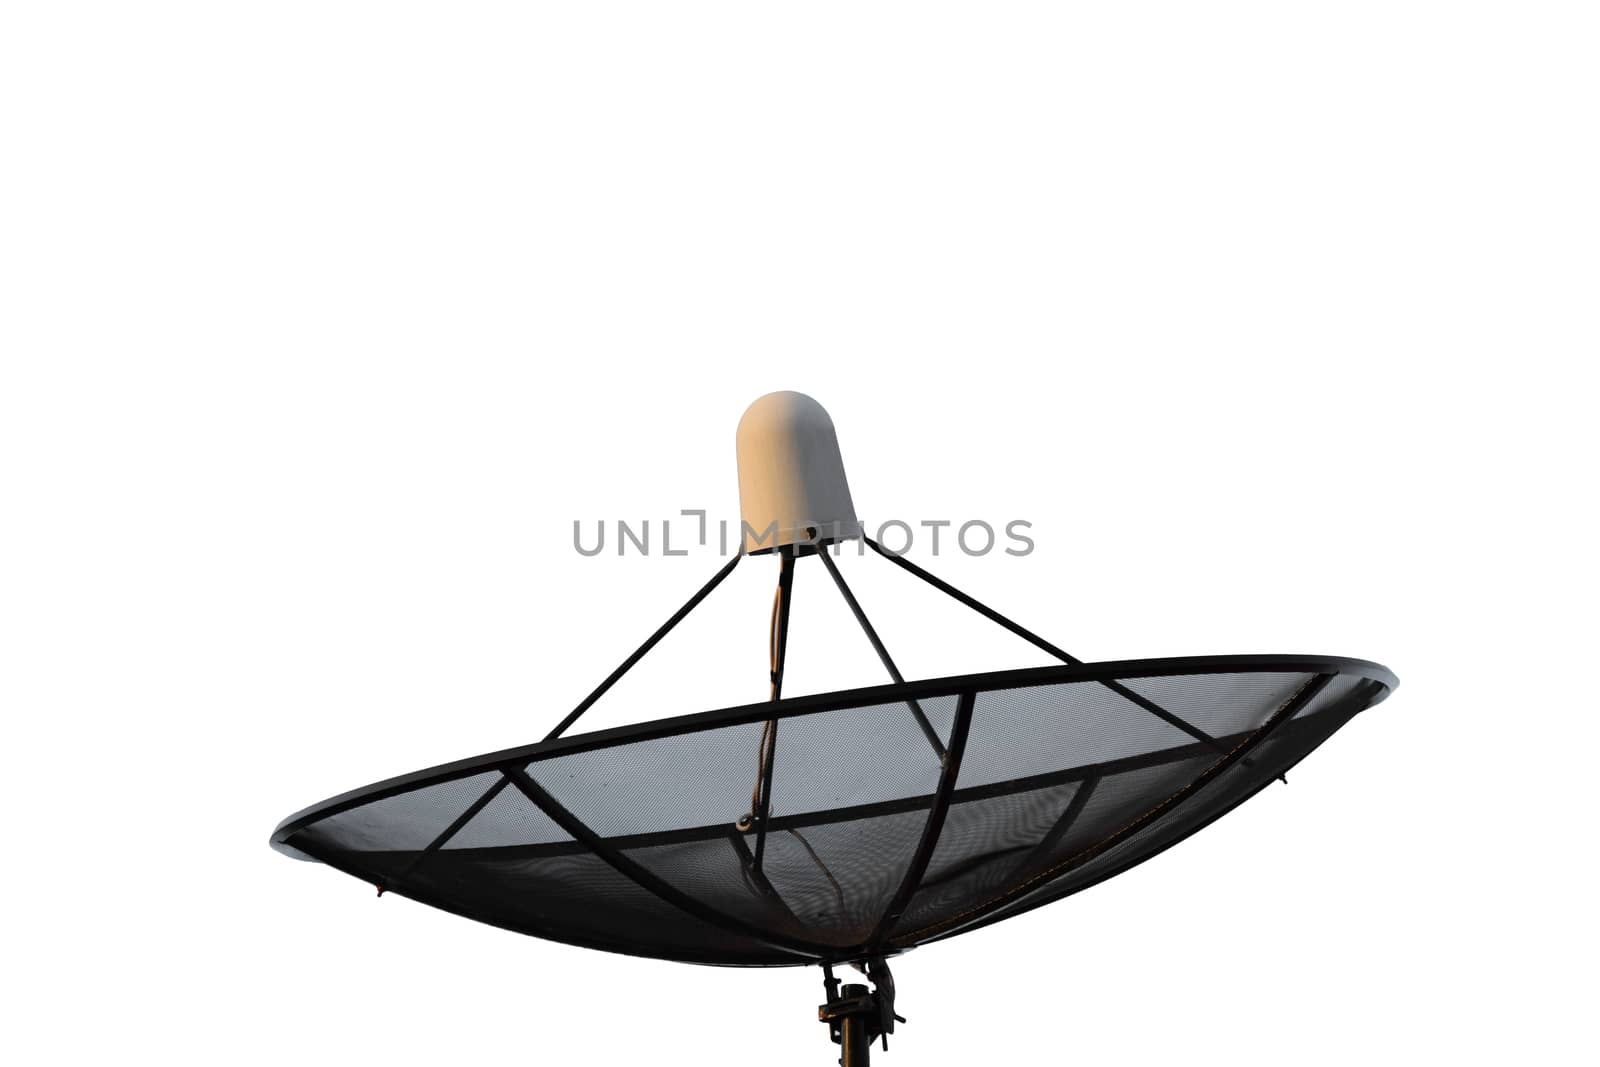 Satellite dish isolated on white background.